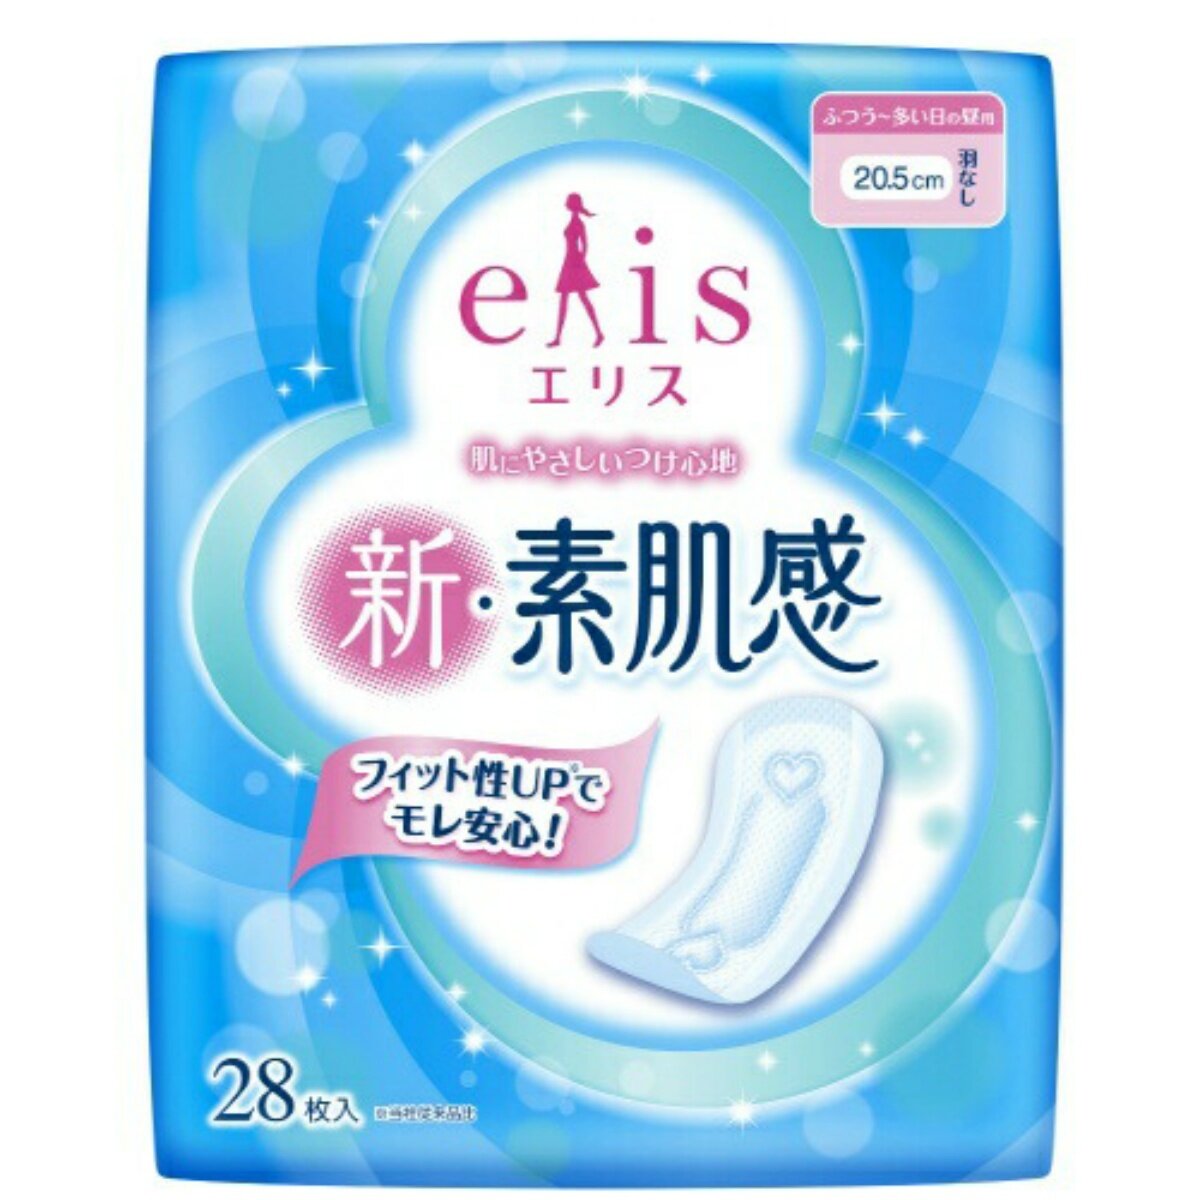 Elis New Skin Гигиенические прокладки классические, без крылышек, (Нормал), 20,5 см, 28 шт